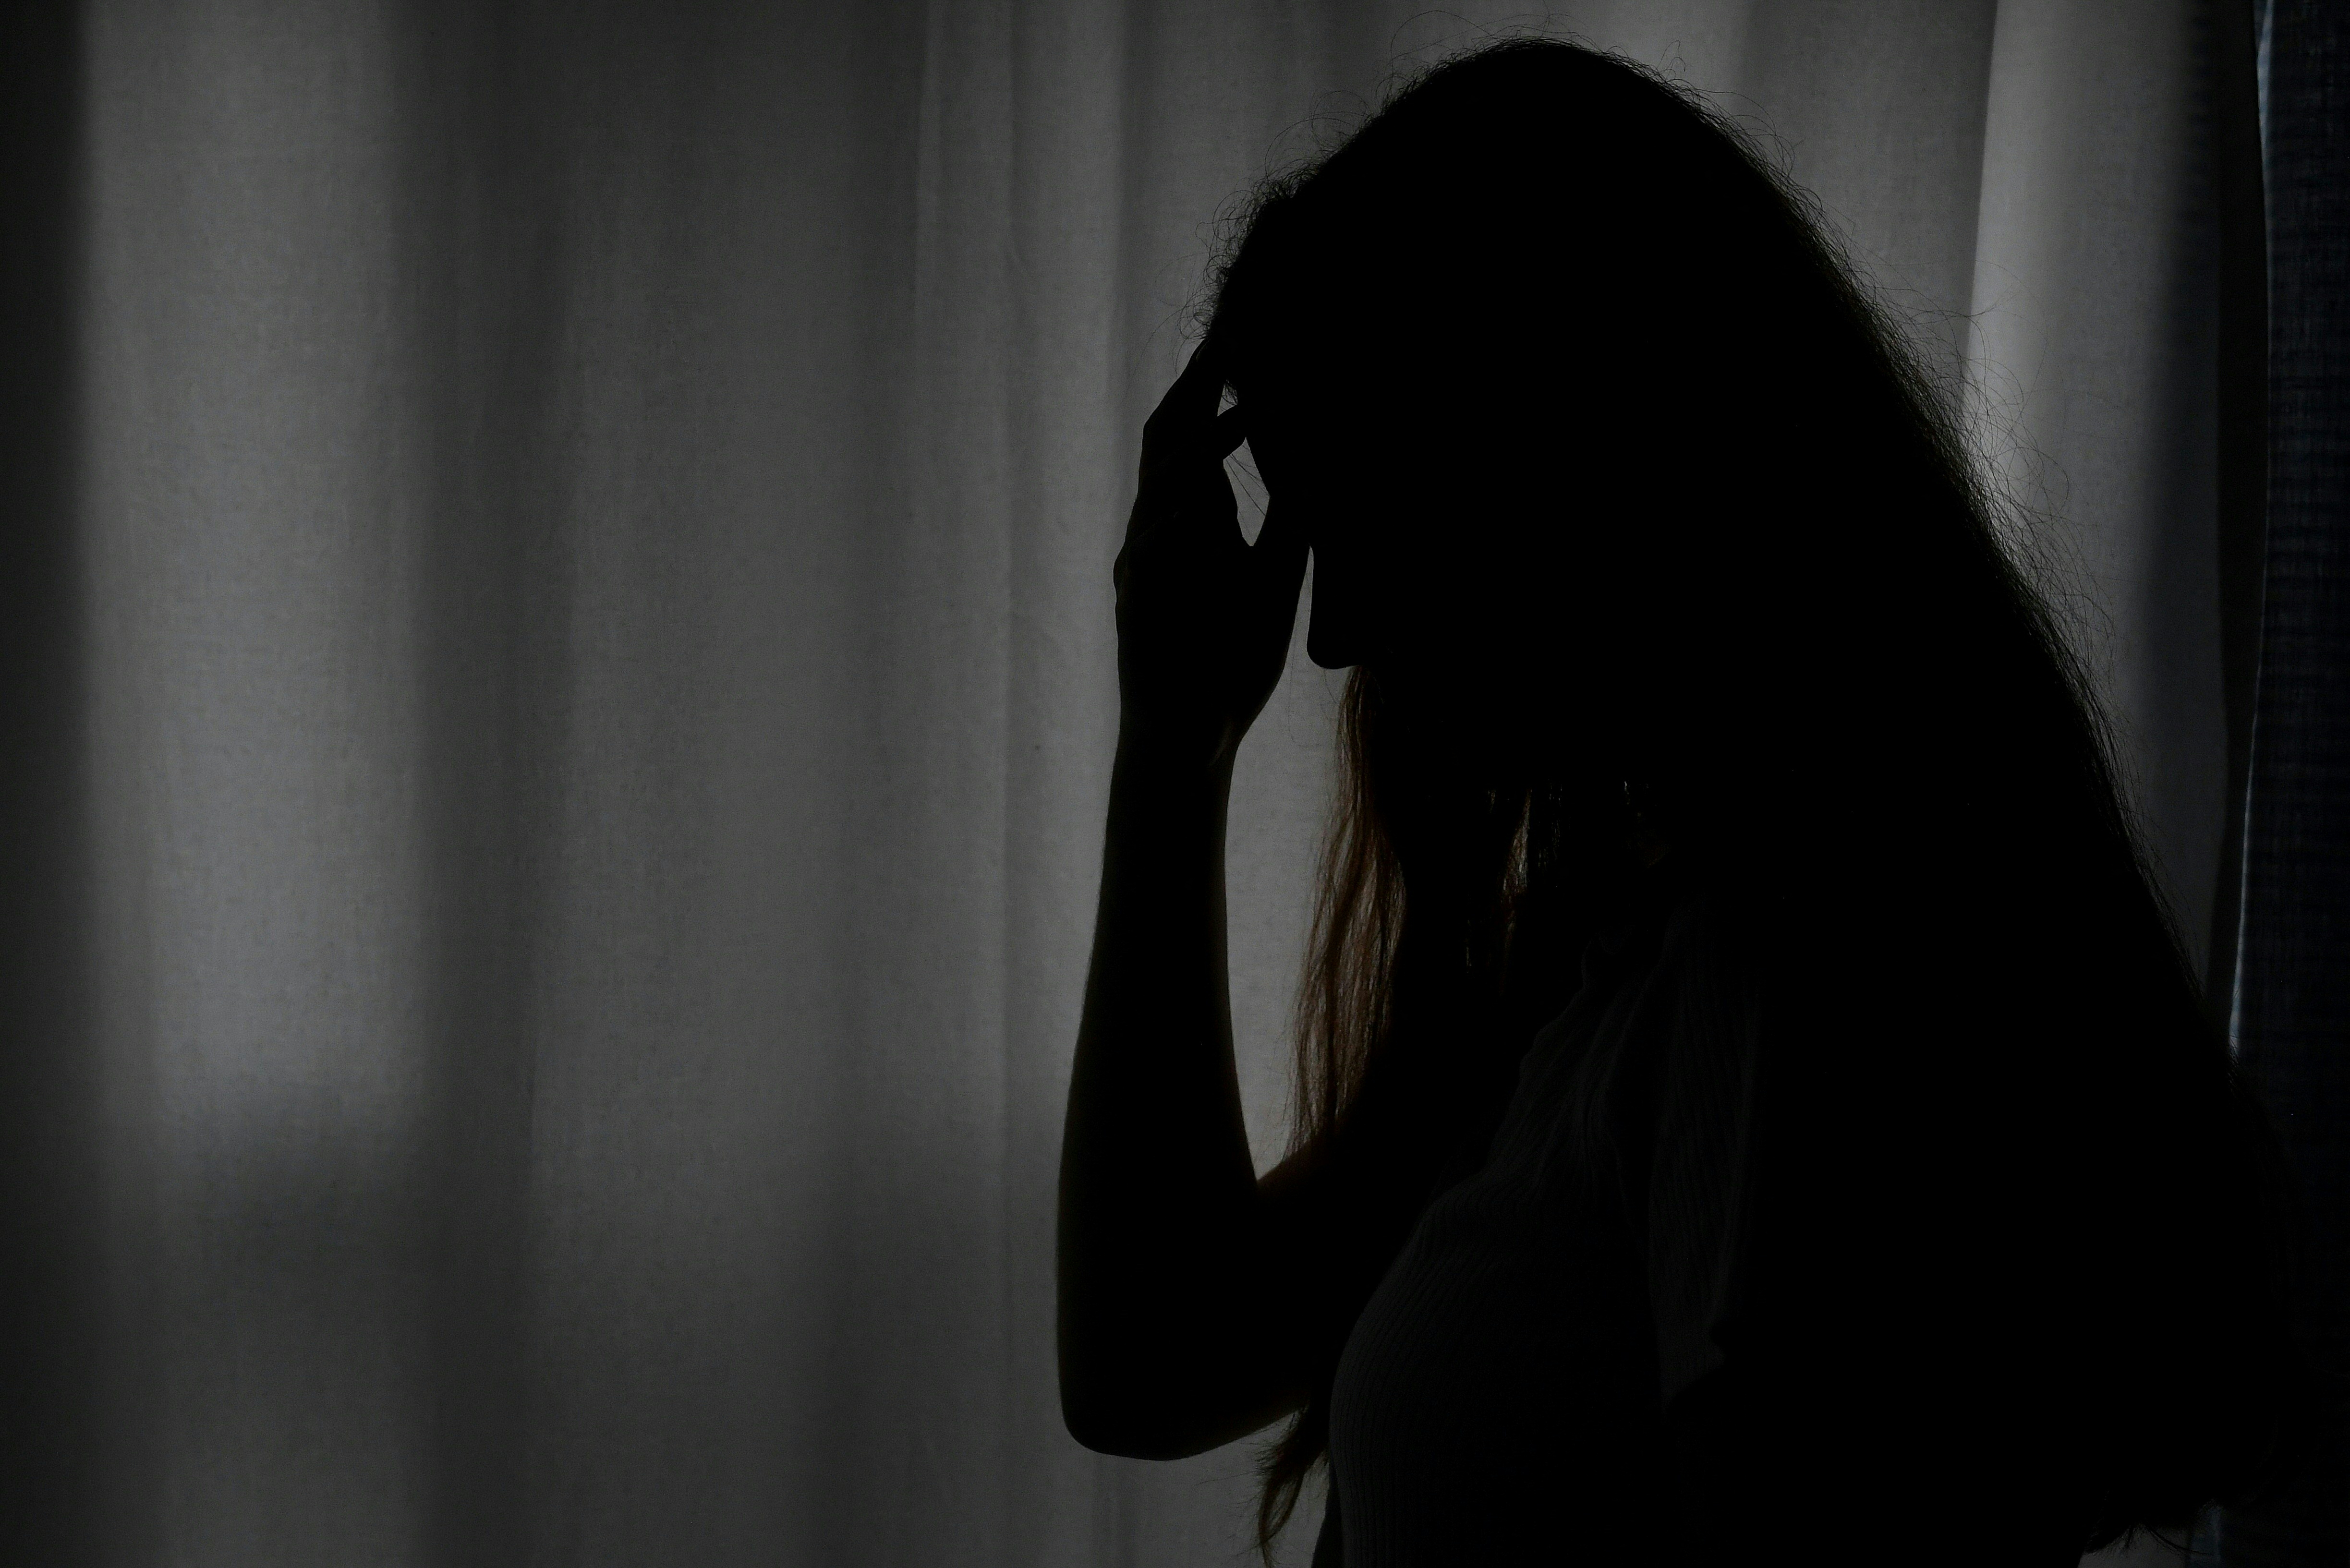 Les hospitalisations pour tentatives de suicide ou automutilation sont en hausse en particulier chez les jeunes femmes, selon un rapport de la Drees et de Santé Publique France. AFP/Olivier DOULIERY